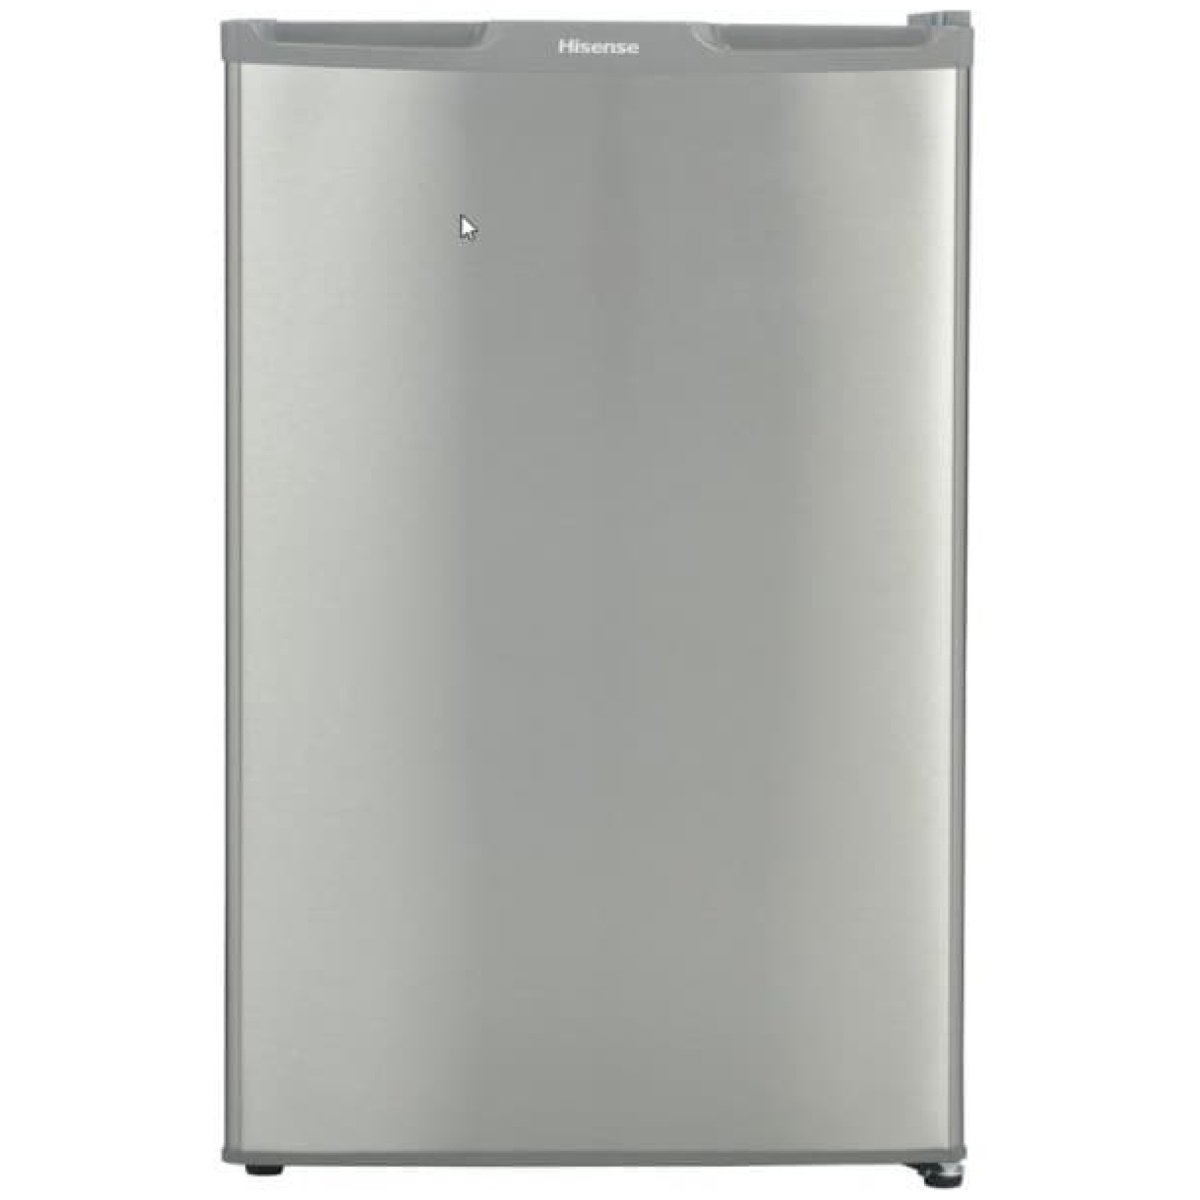 Hisense 100L Single Door Refrigerator Silver REF 100 DR